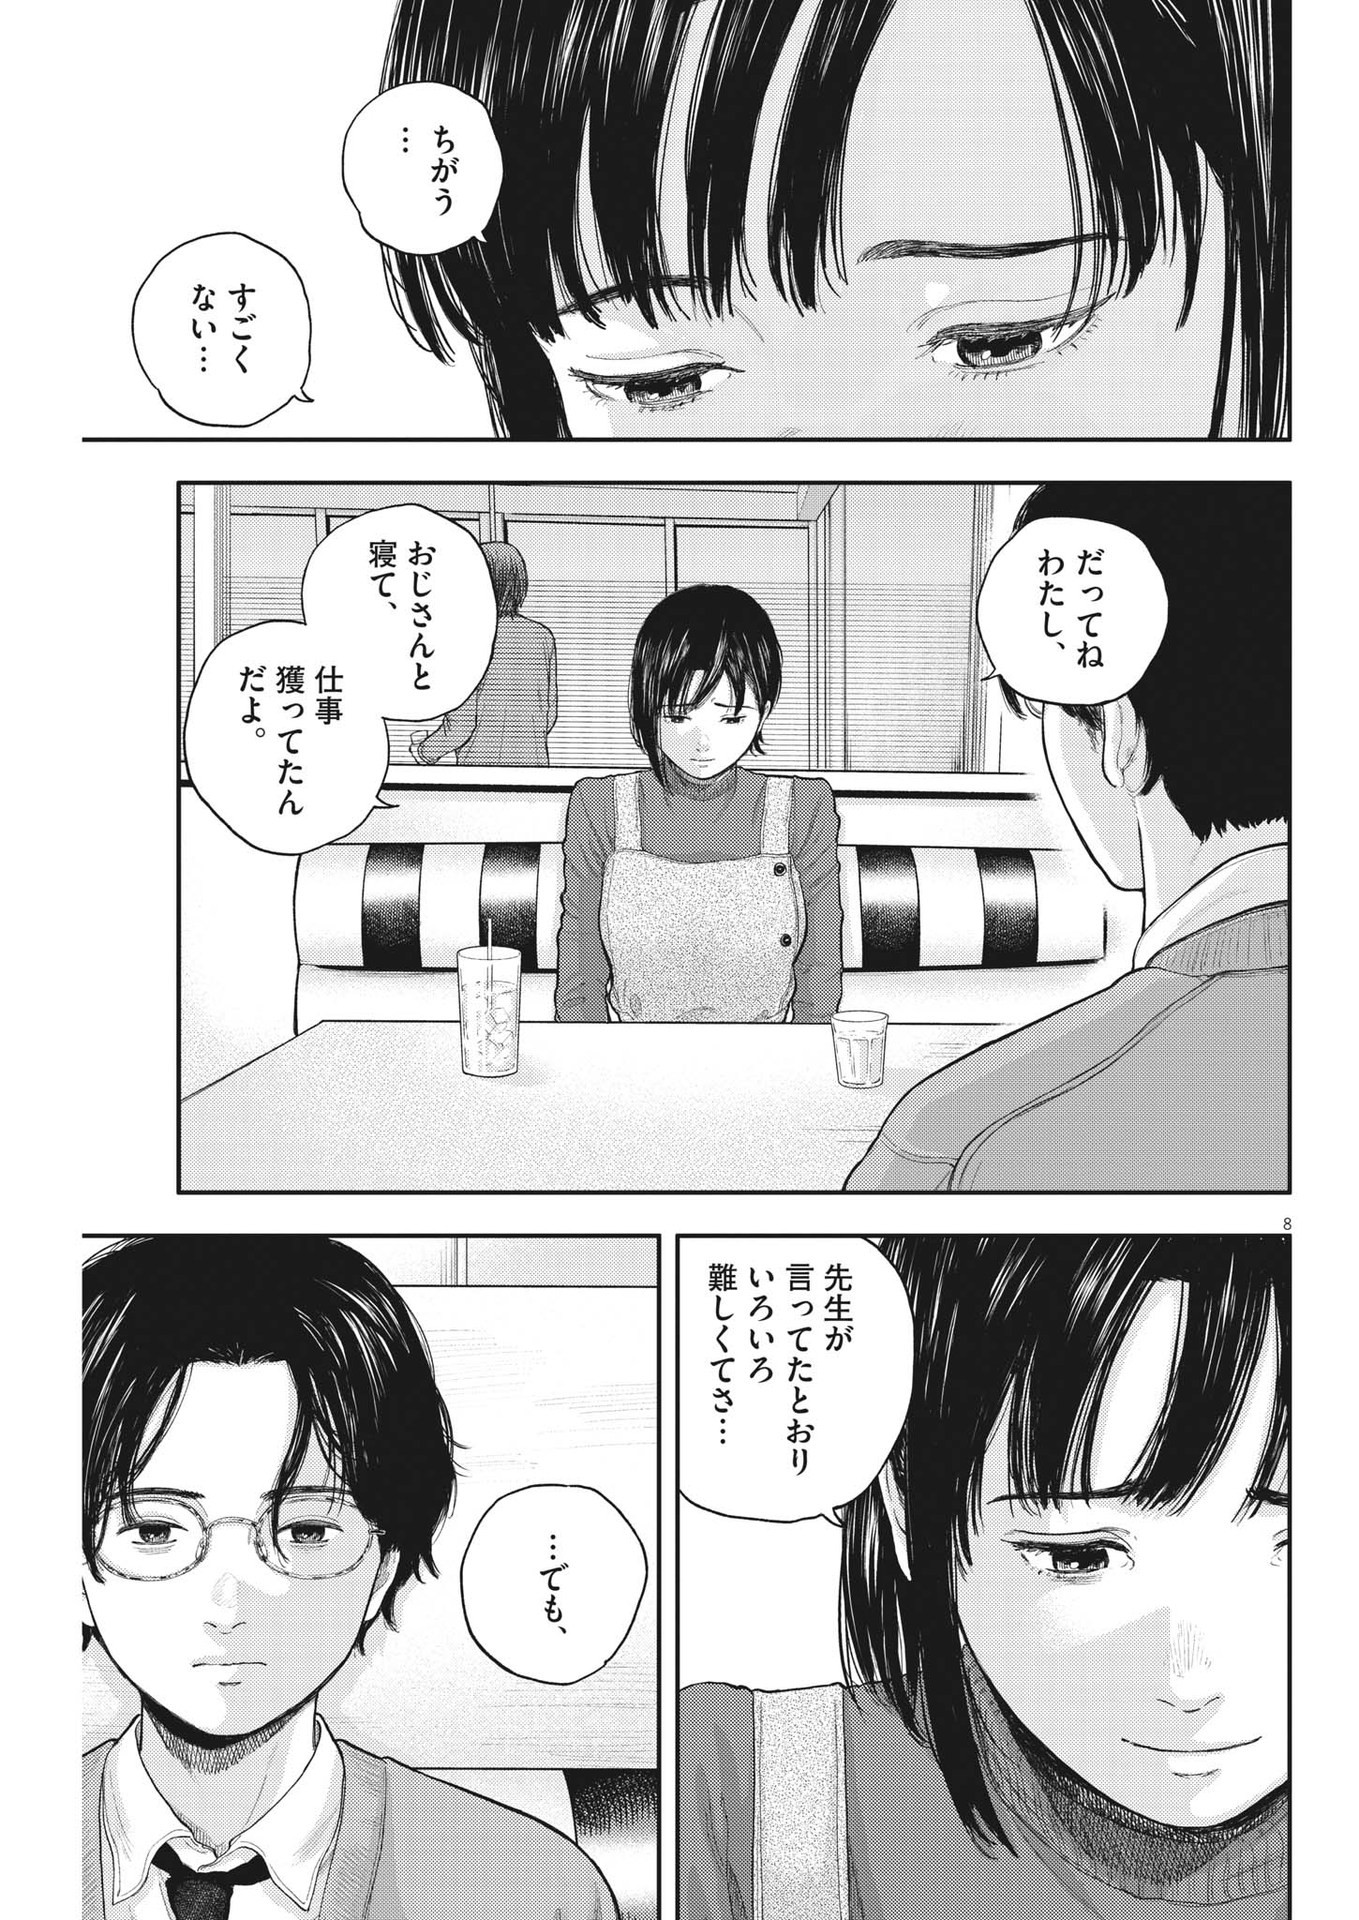 Yumenashi-sensei no Shinroshidou - Chapter 2 - Page 8